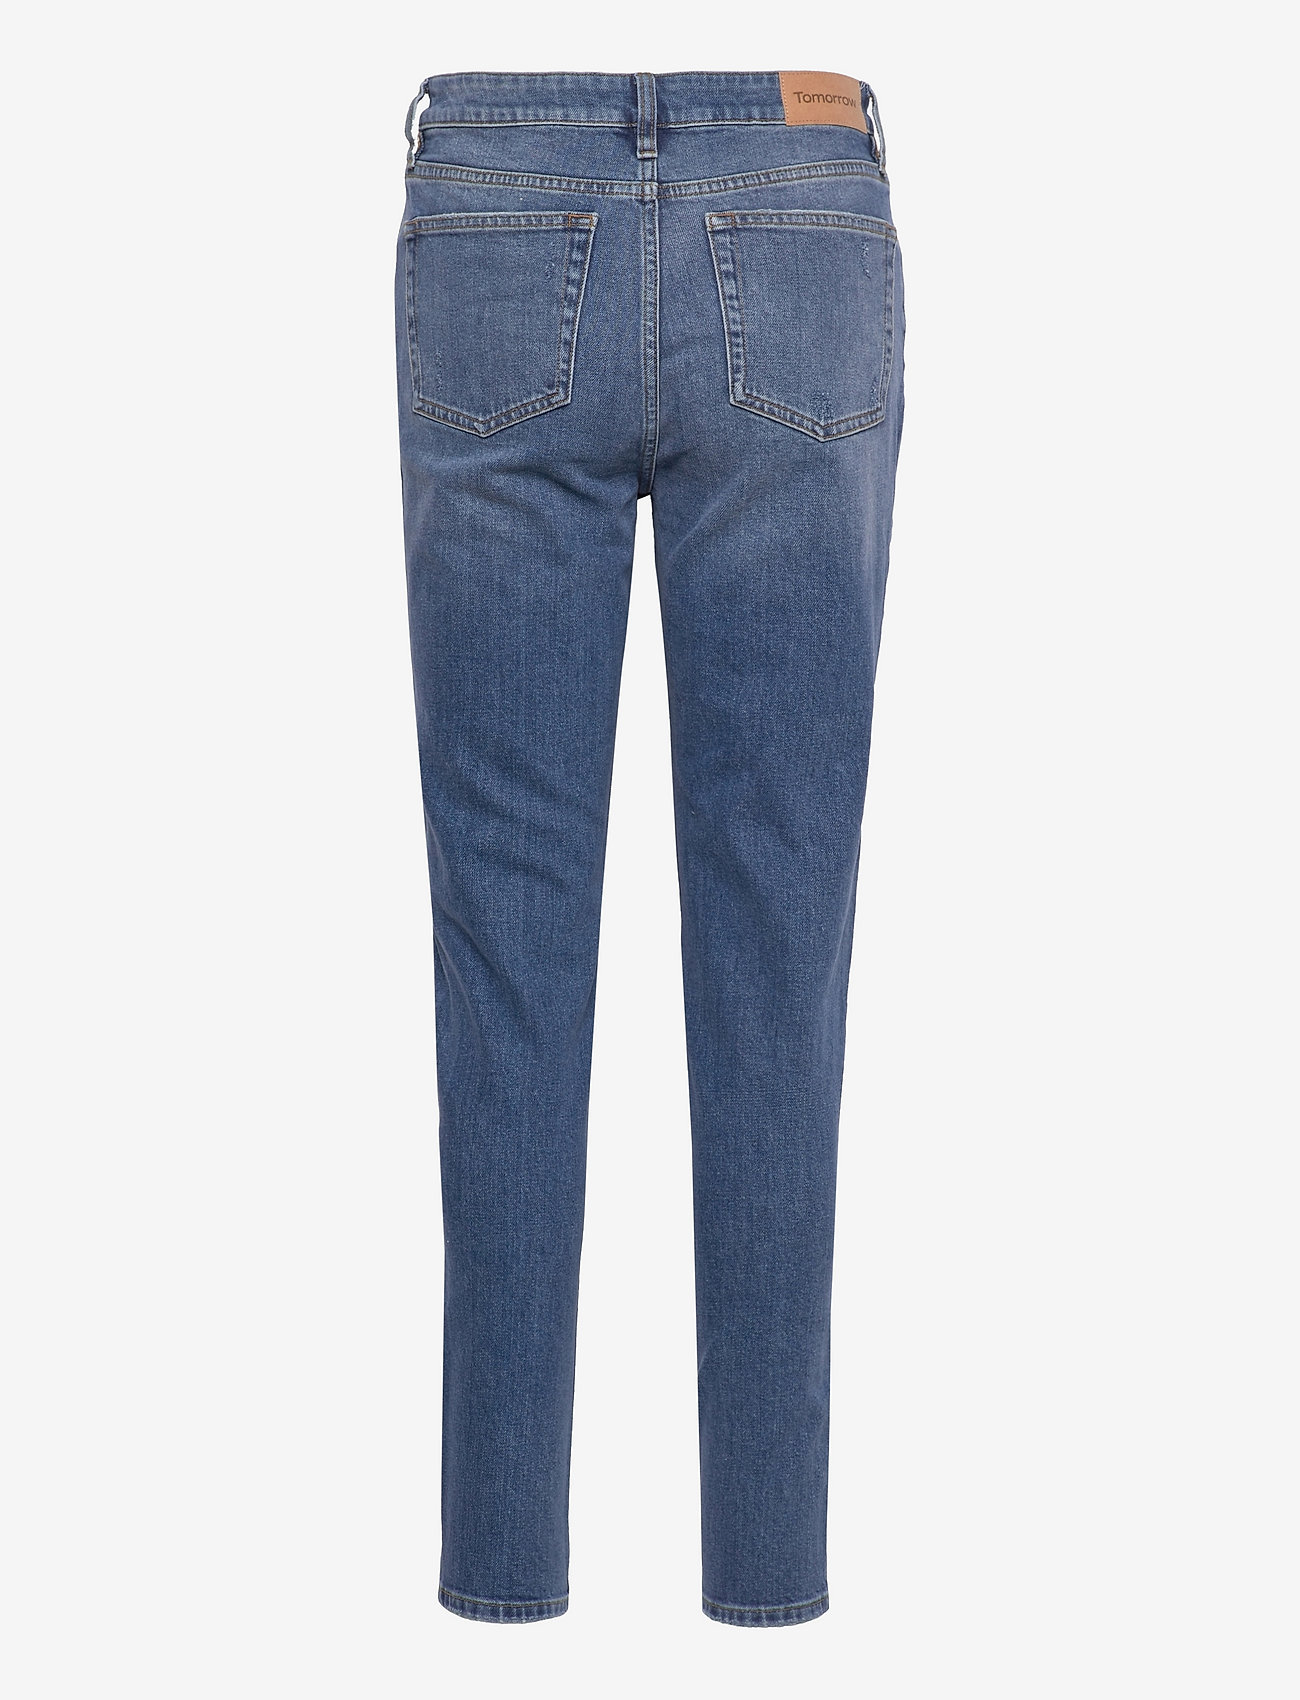 Tomorrow - Hepburn Jeans wash Brooklyn - slim fit jeans - denim blue - 1